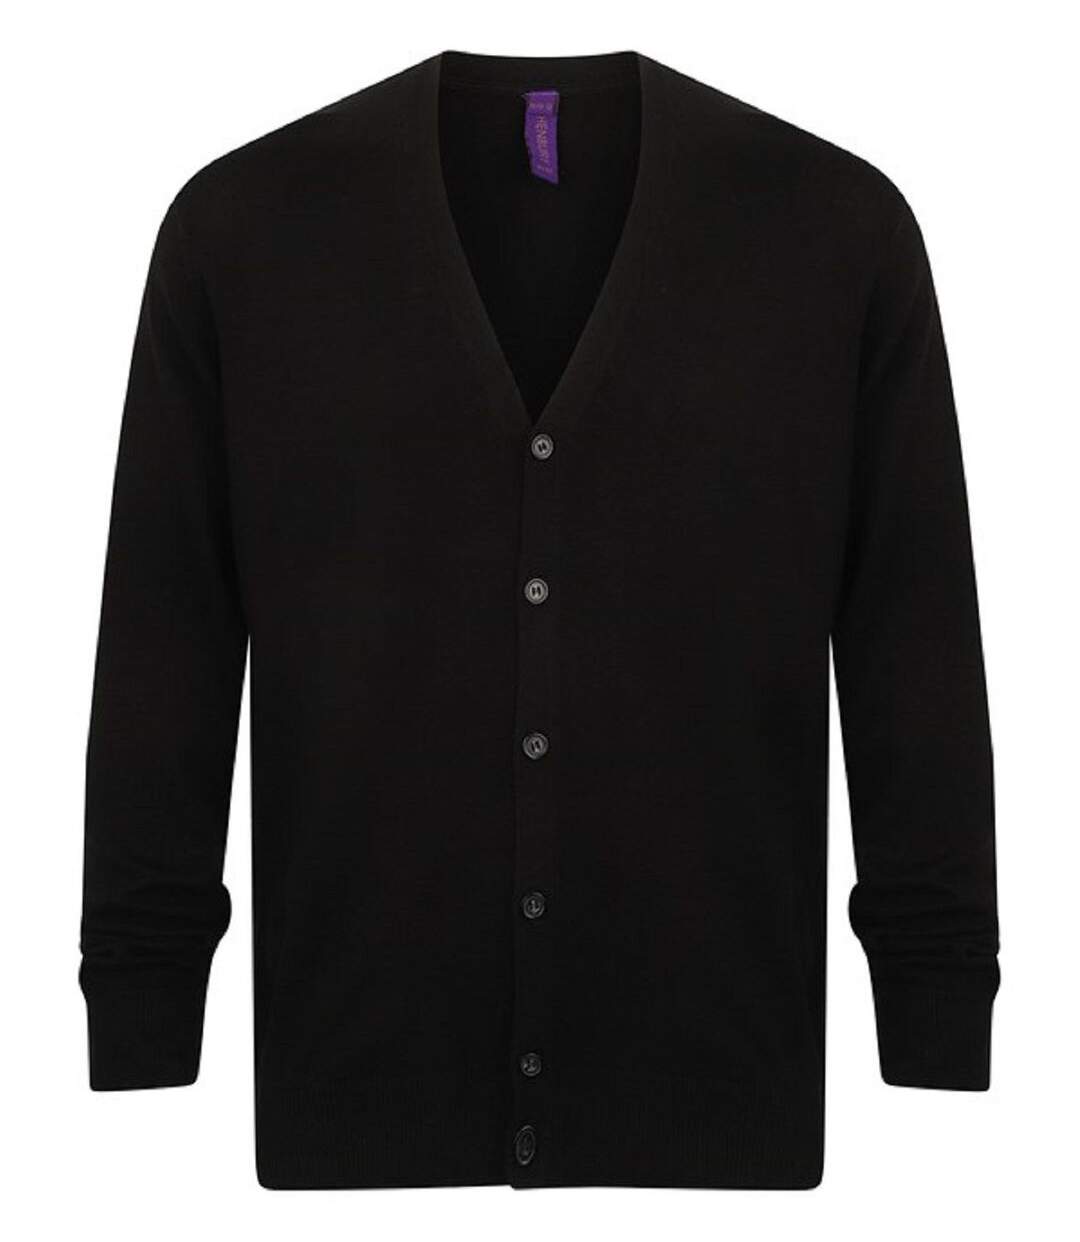 Gilet boutonné cardigan - HOMME - H722 - noir